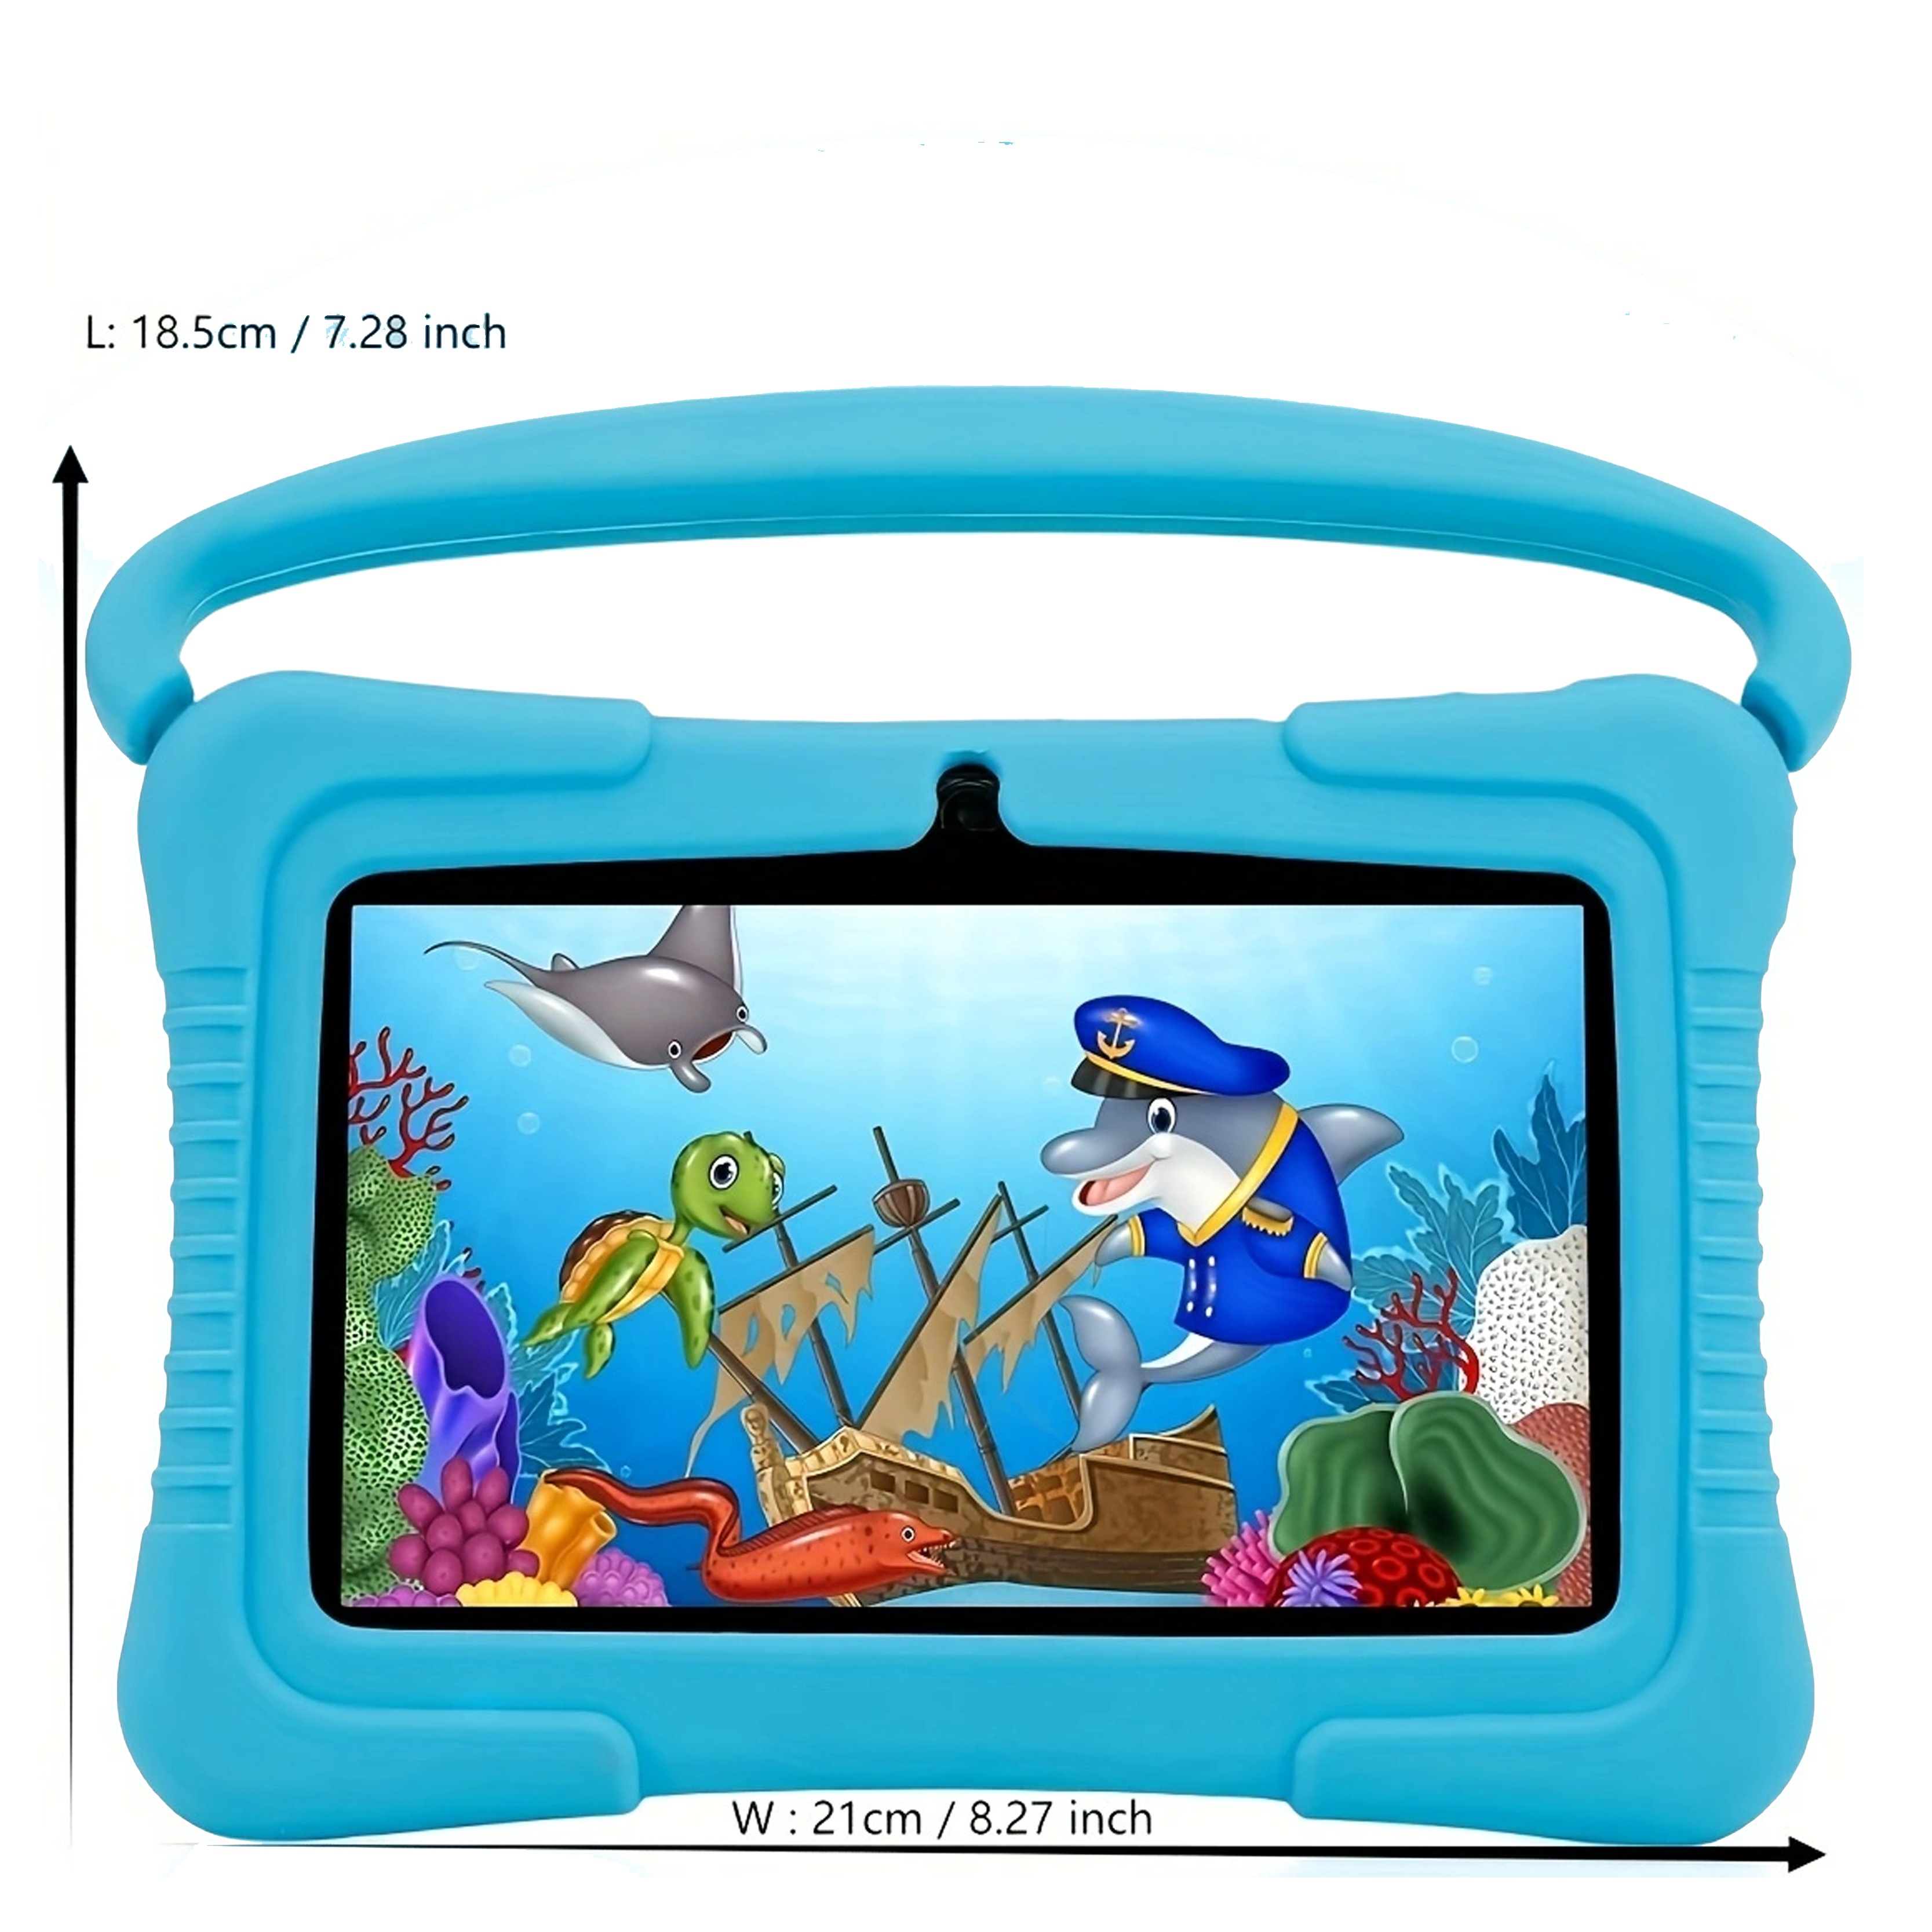 TABLETTE ENFANT ANTICHOC - Écran LCD: écran TN 7  - Système: Android 7.1 -  Mémoire interne: 16Go - Ram: 1Go